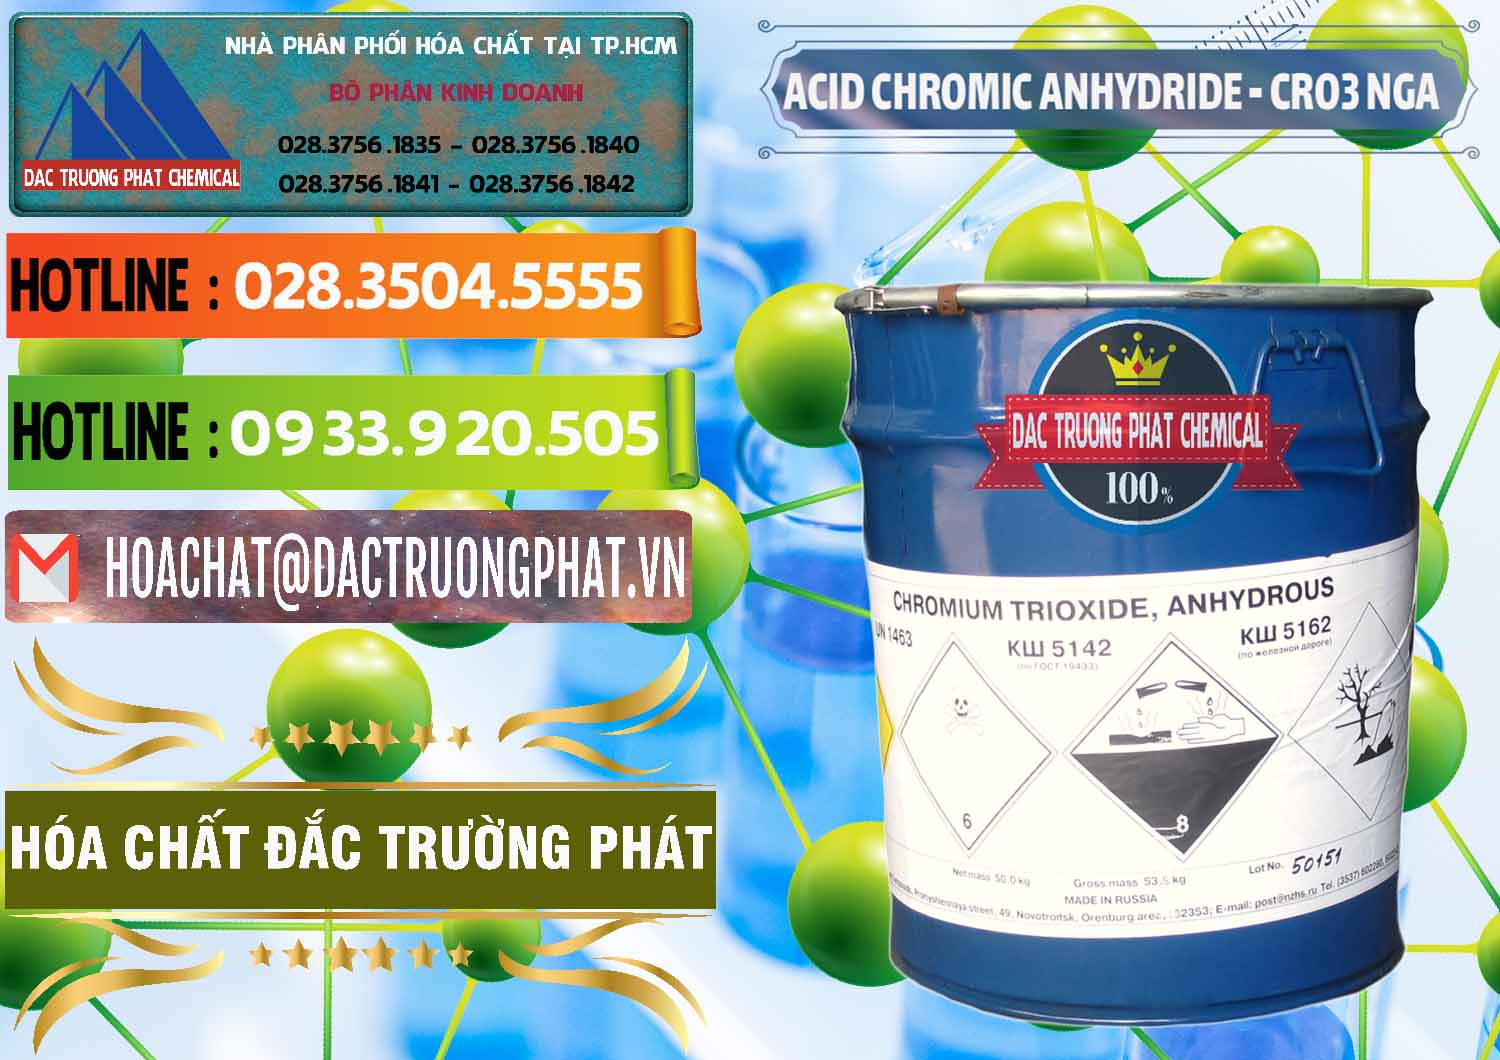 Đơn vị bán - phân phối Acid Chromic Anhydride - Cromic CRO3 Nga Russia - 0006 - Cty cung ứng & phân phối hóa chất tại TP.HCM - cungcaphoachat.com.vn